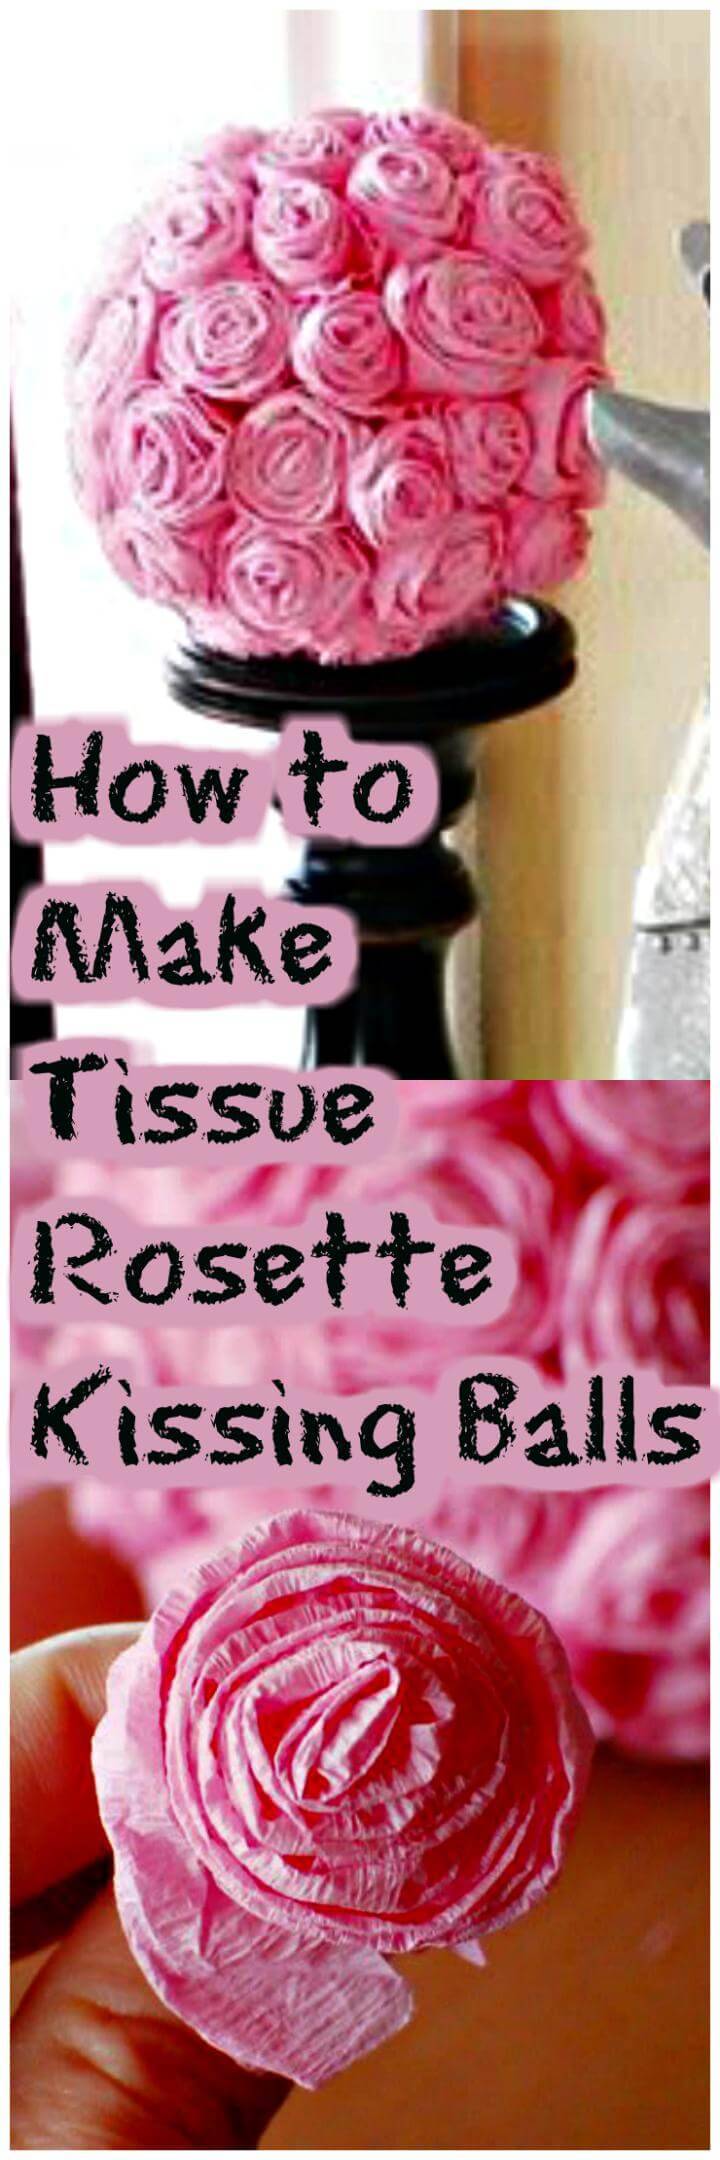 easy tissue rossette kissing balls